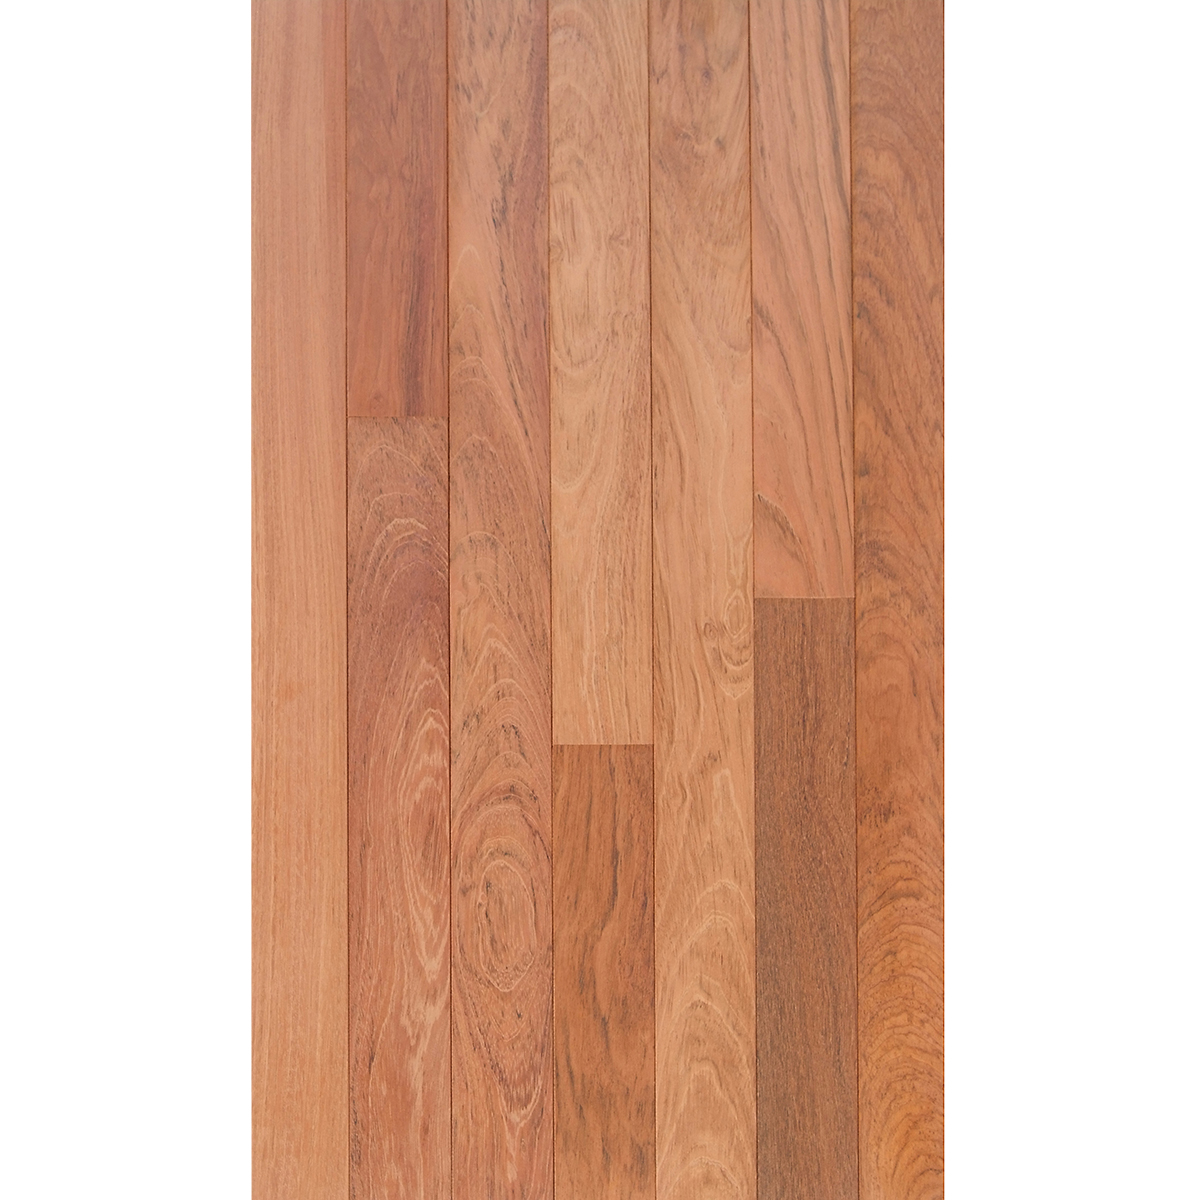 Brazilian Cherry 3 4 X 1 Select, Prefinished Solid Brazilian Cherry Hardwood Flooring